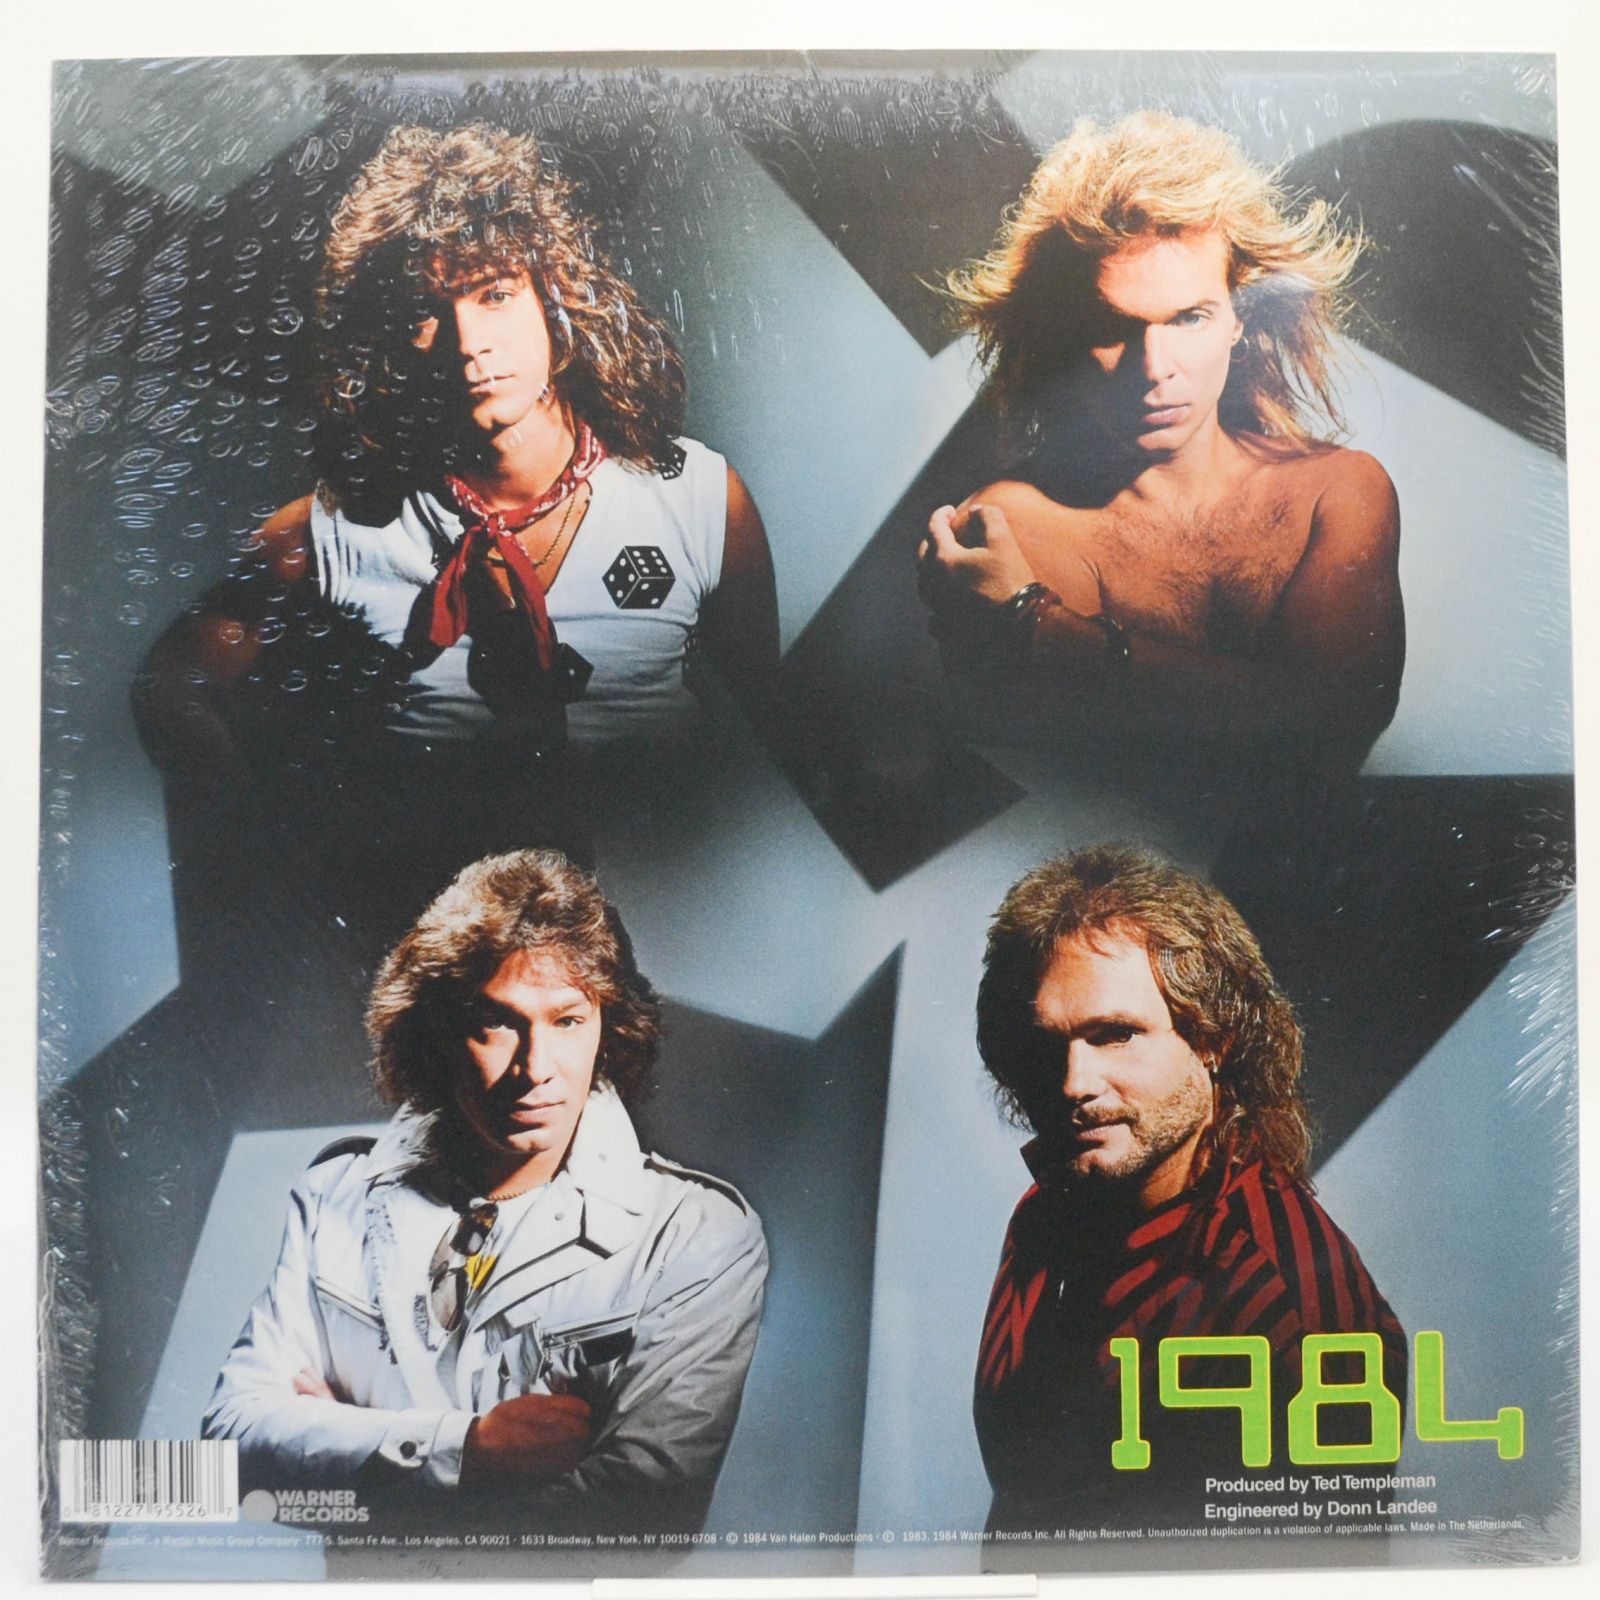 Van Halen — 1984, 2019